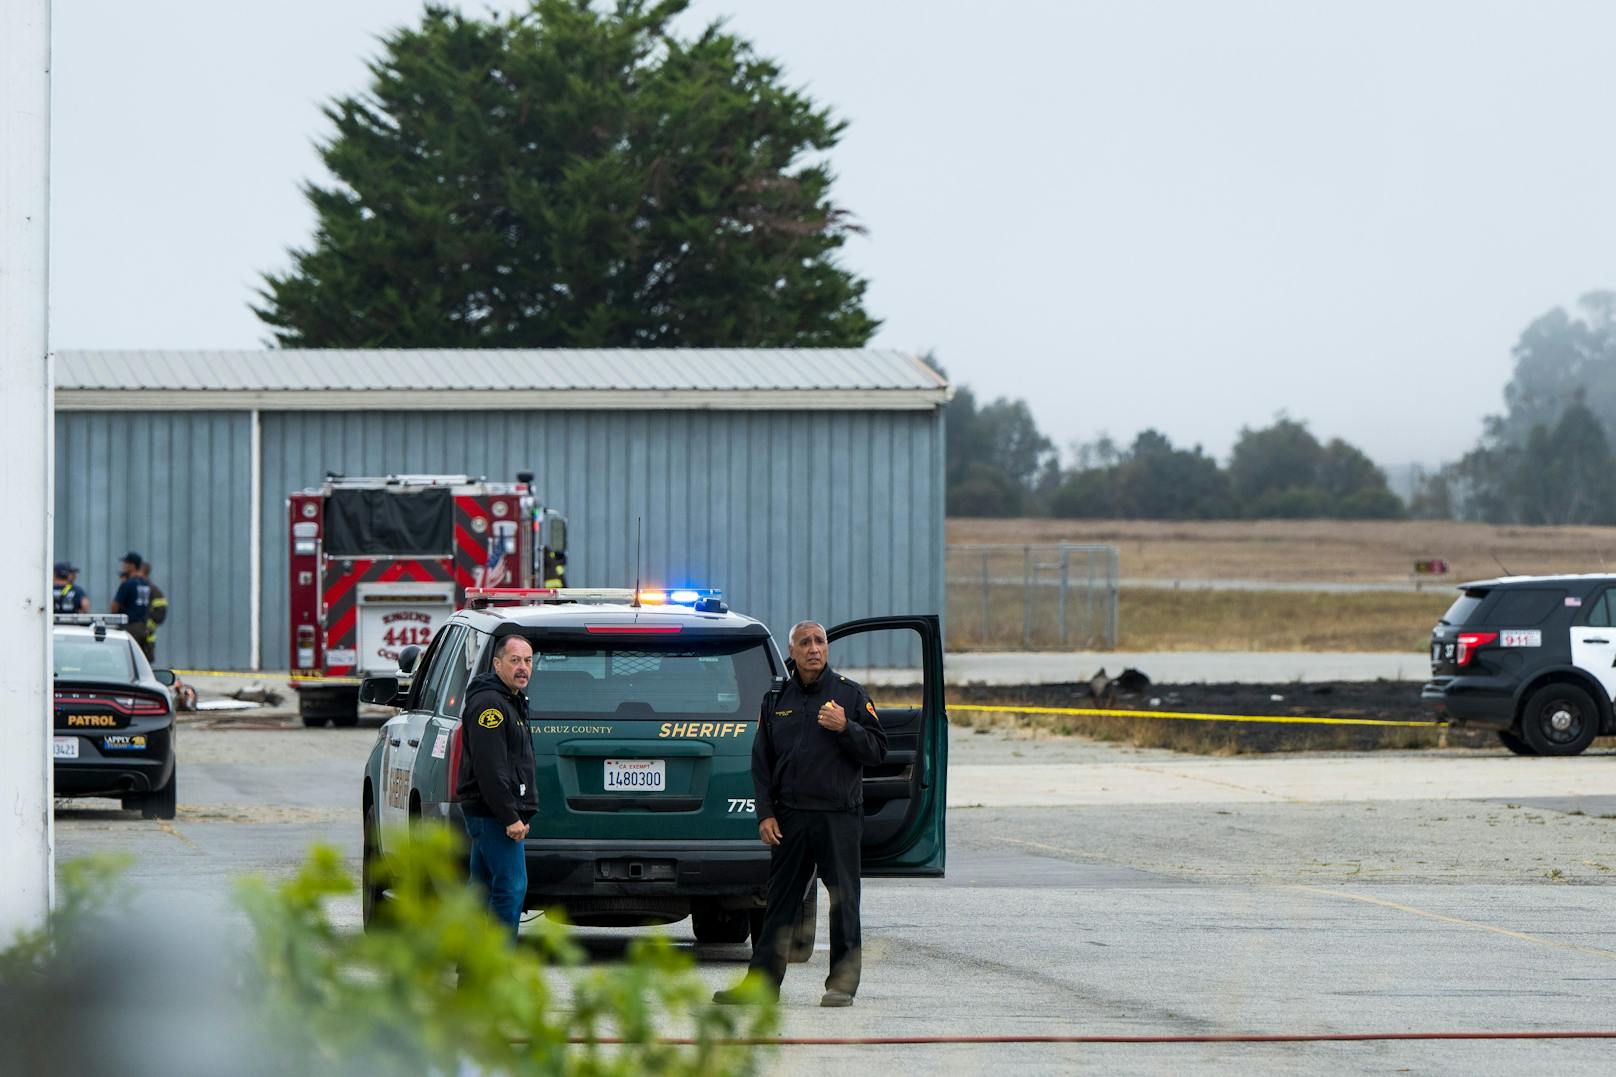 Eines der Flugzeuge krachte in einen Hangar neben der Landebahn, während das zweite Flugzeug auf einer Wiese neben dem Flughafen zum Stillstand kam.